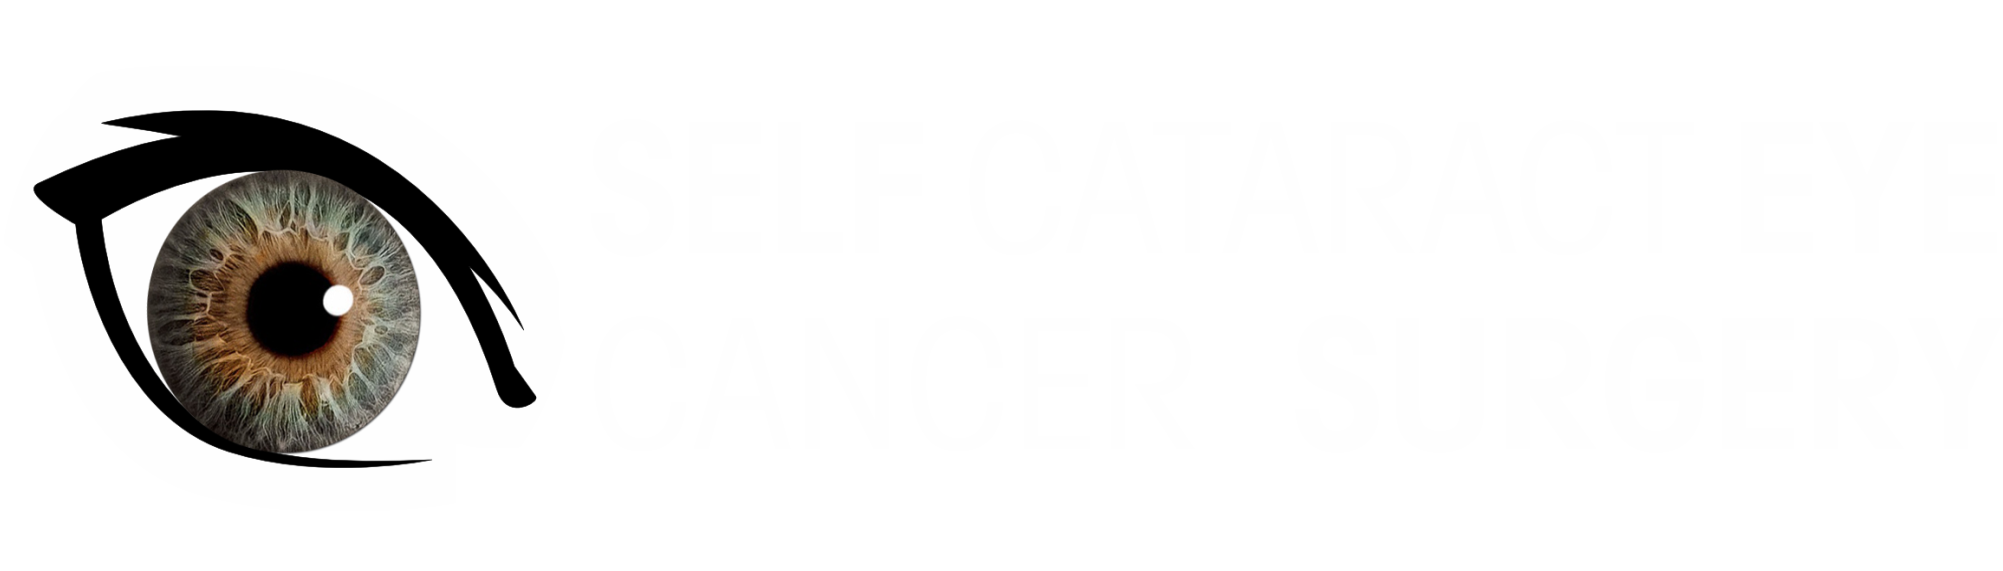 Self Cataract Eye Cancer Surgery